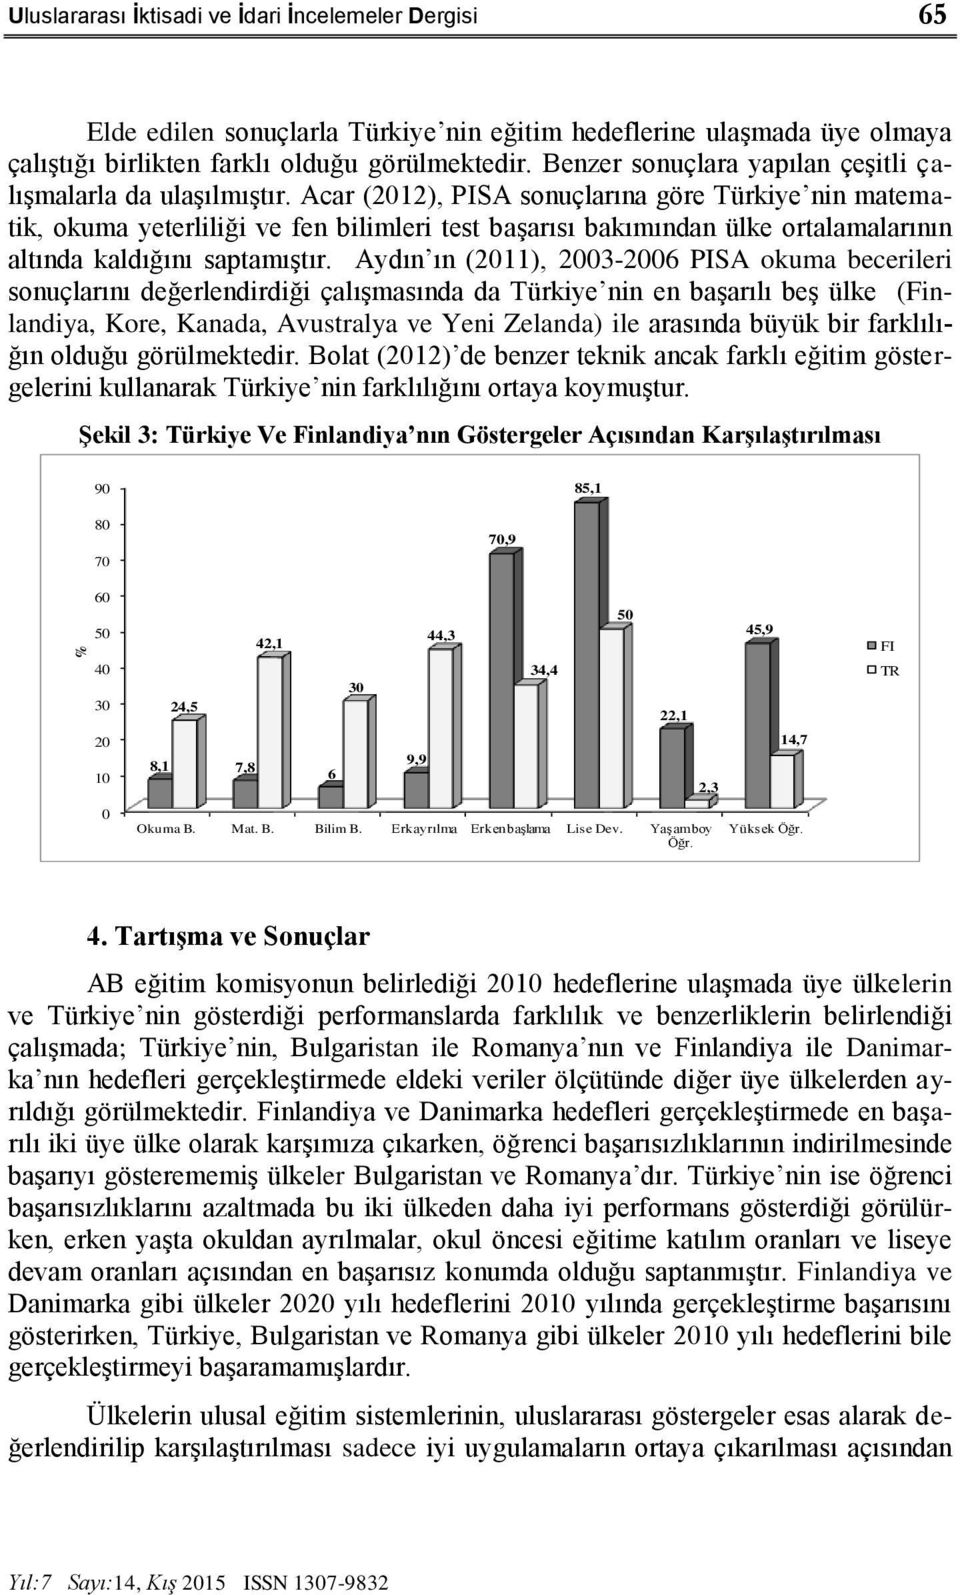 Acar (2012), PISA sonuçlarına göre Türkiye nin matematik, okuma yeterliliği ve fen bilimleri test başarısı bakımından ülke ortalamalarının altında kaldığını saptamıştır.